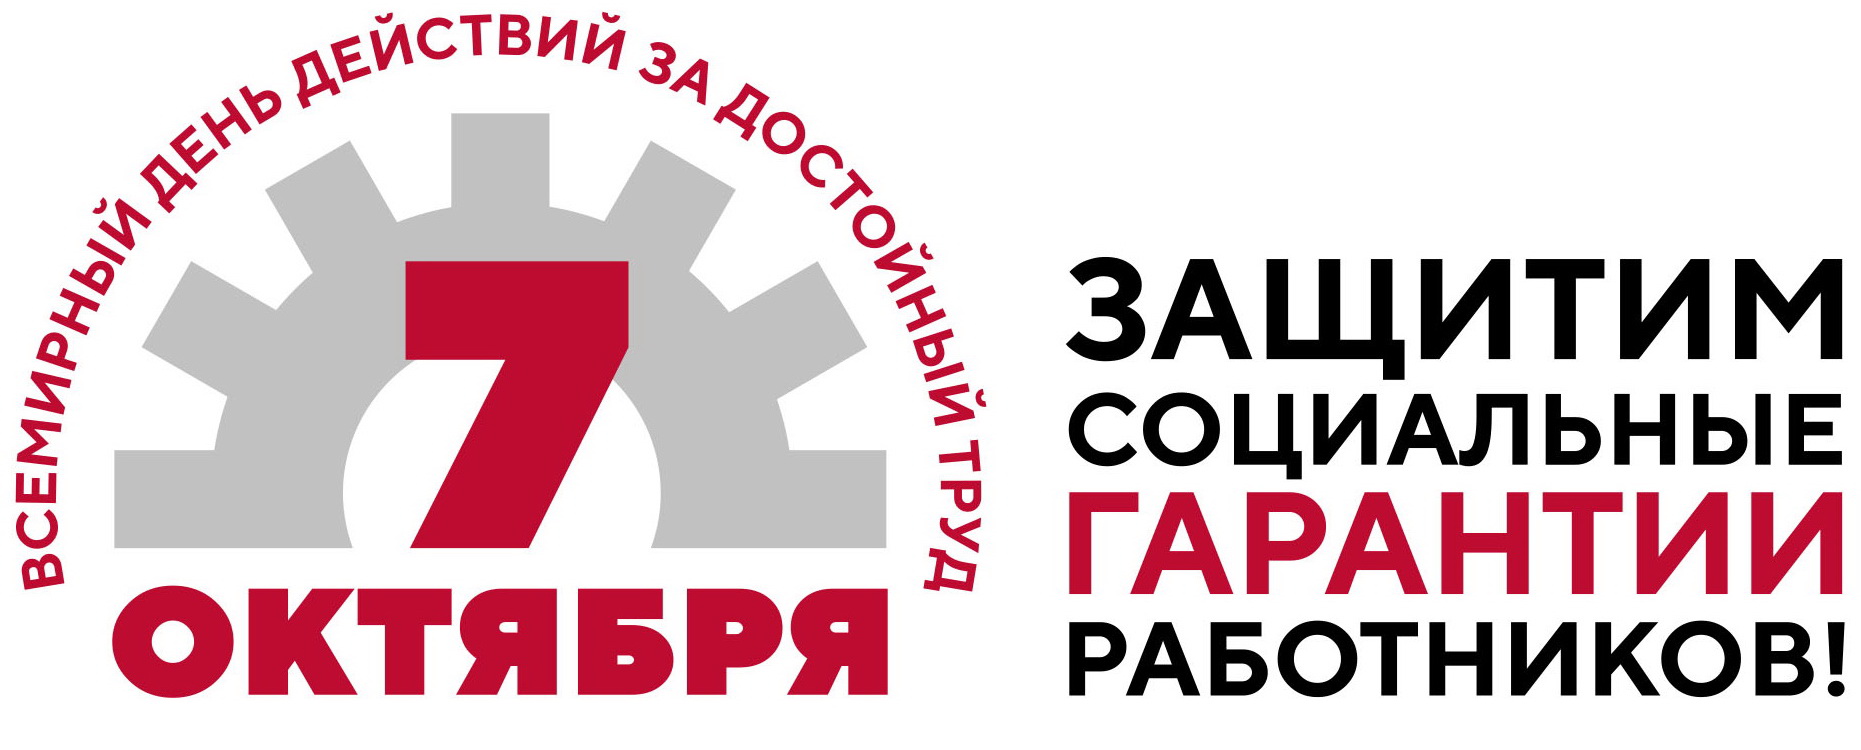 Стартует Всероссийская акция профсоюзов в рамках Всемирного дня действий «За достойный труд»